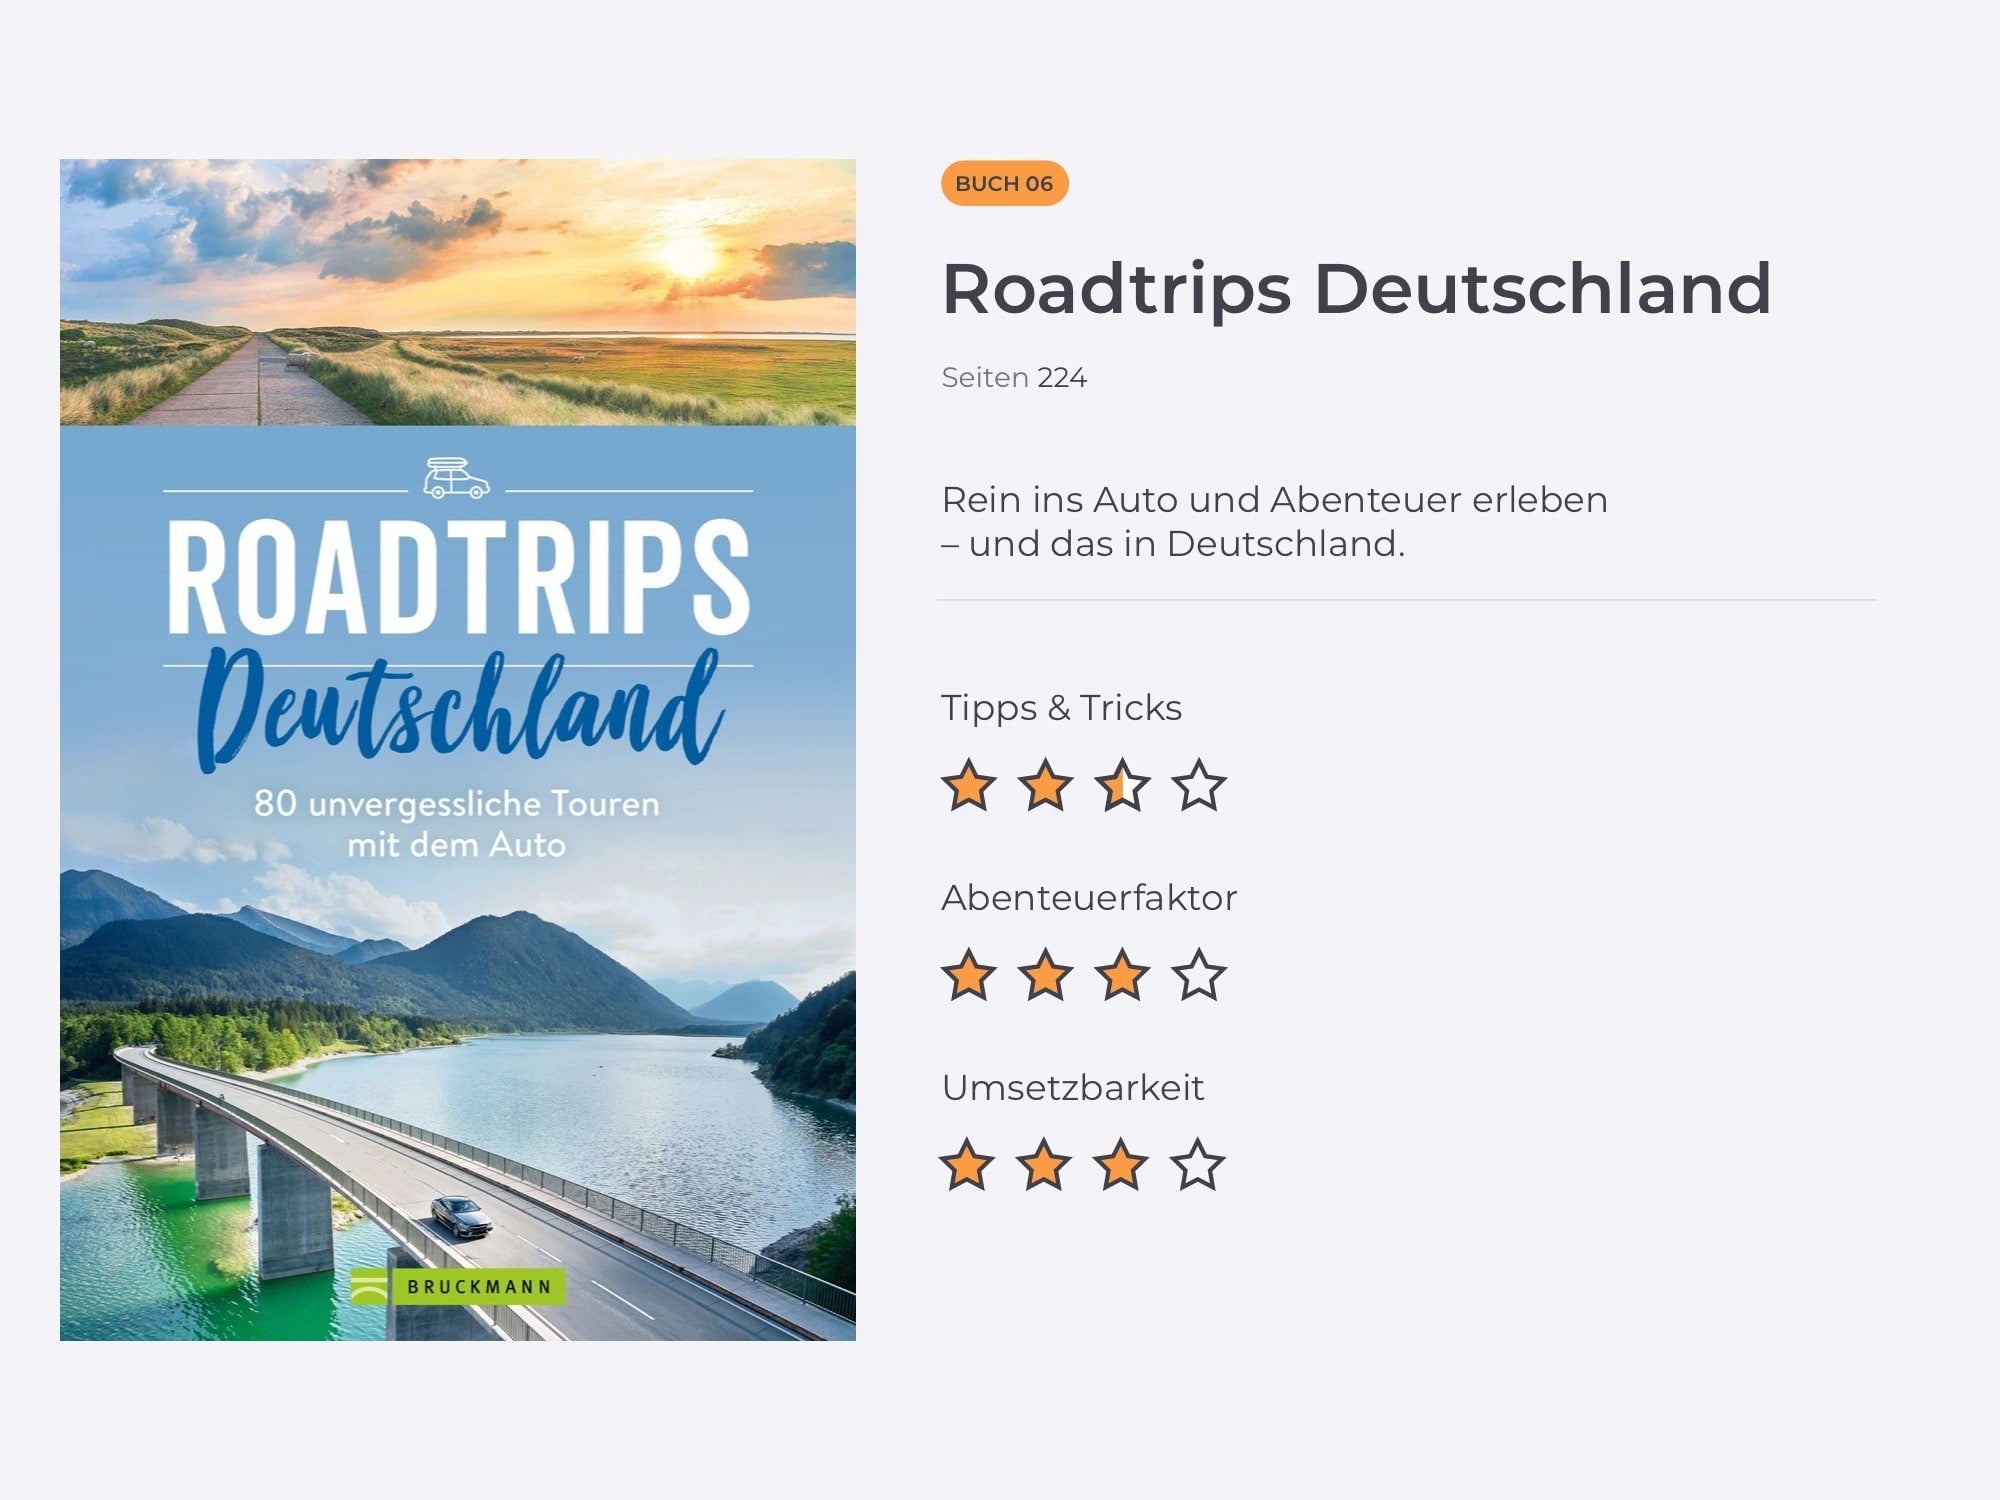 Titelbild des Buchs über Roadtrips in Deutschland